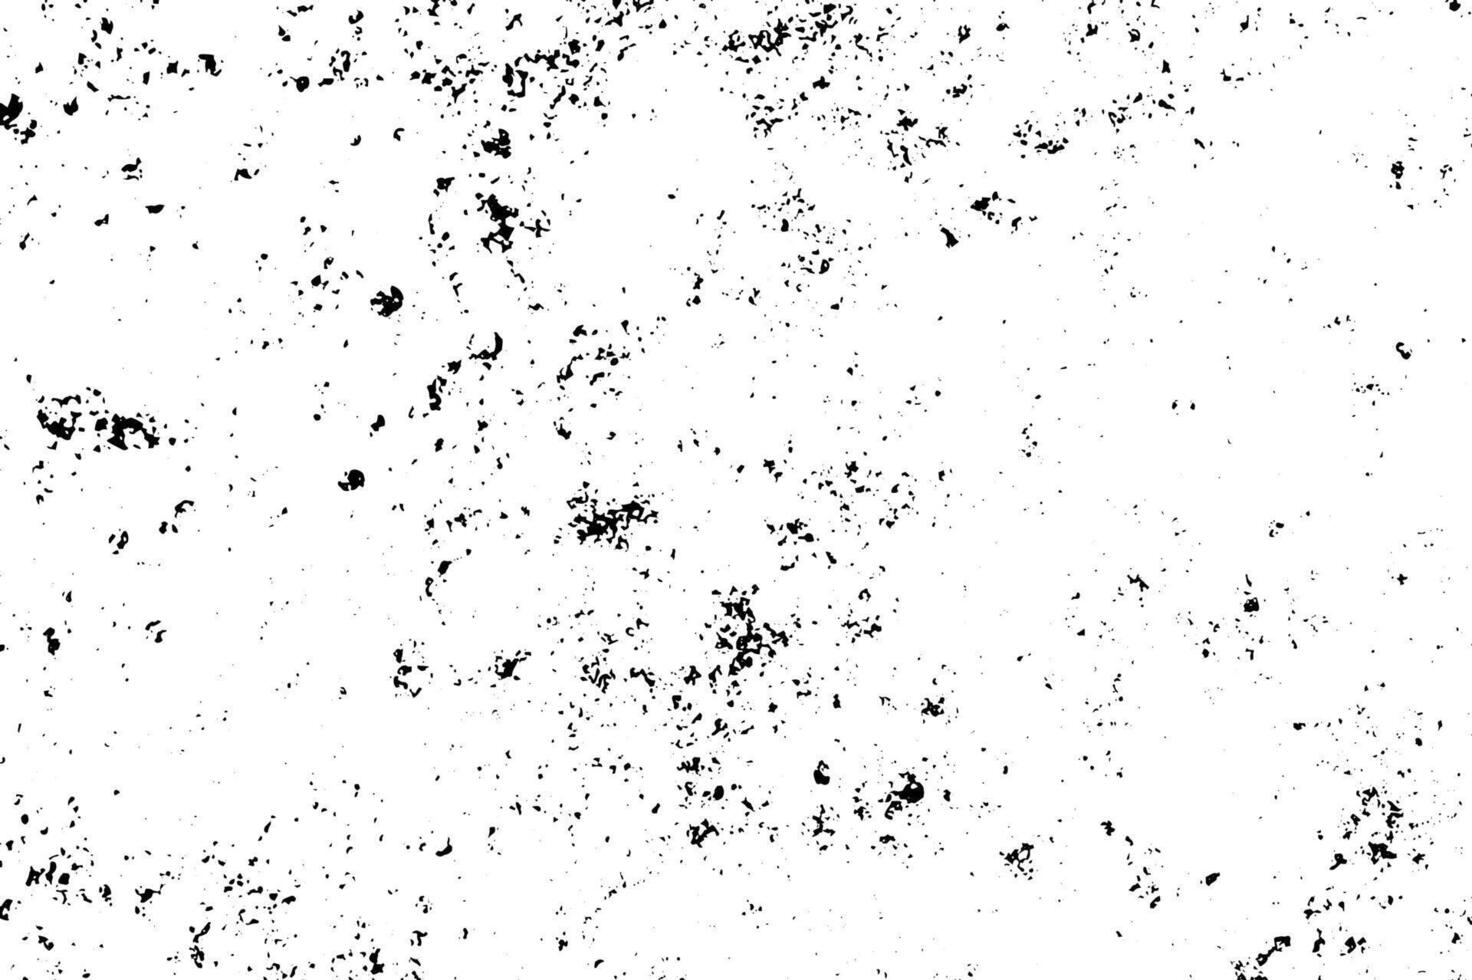 grunge svart och vit textur. abstrakt svartvit bakgrund mönster av sprickor, pommes frites, repor, fläckar, skav. årgång gammal yta vektor